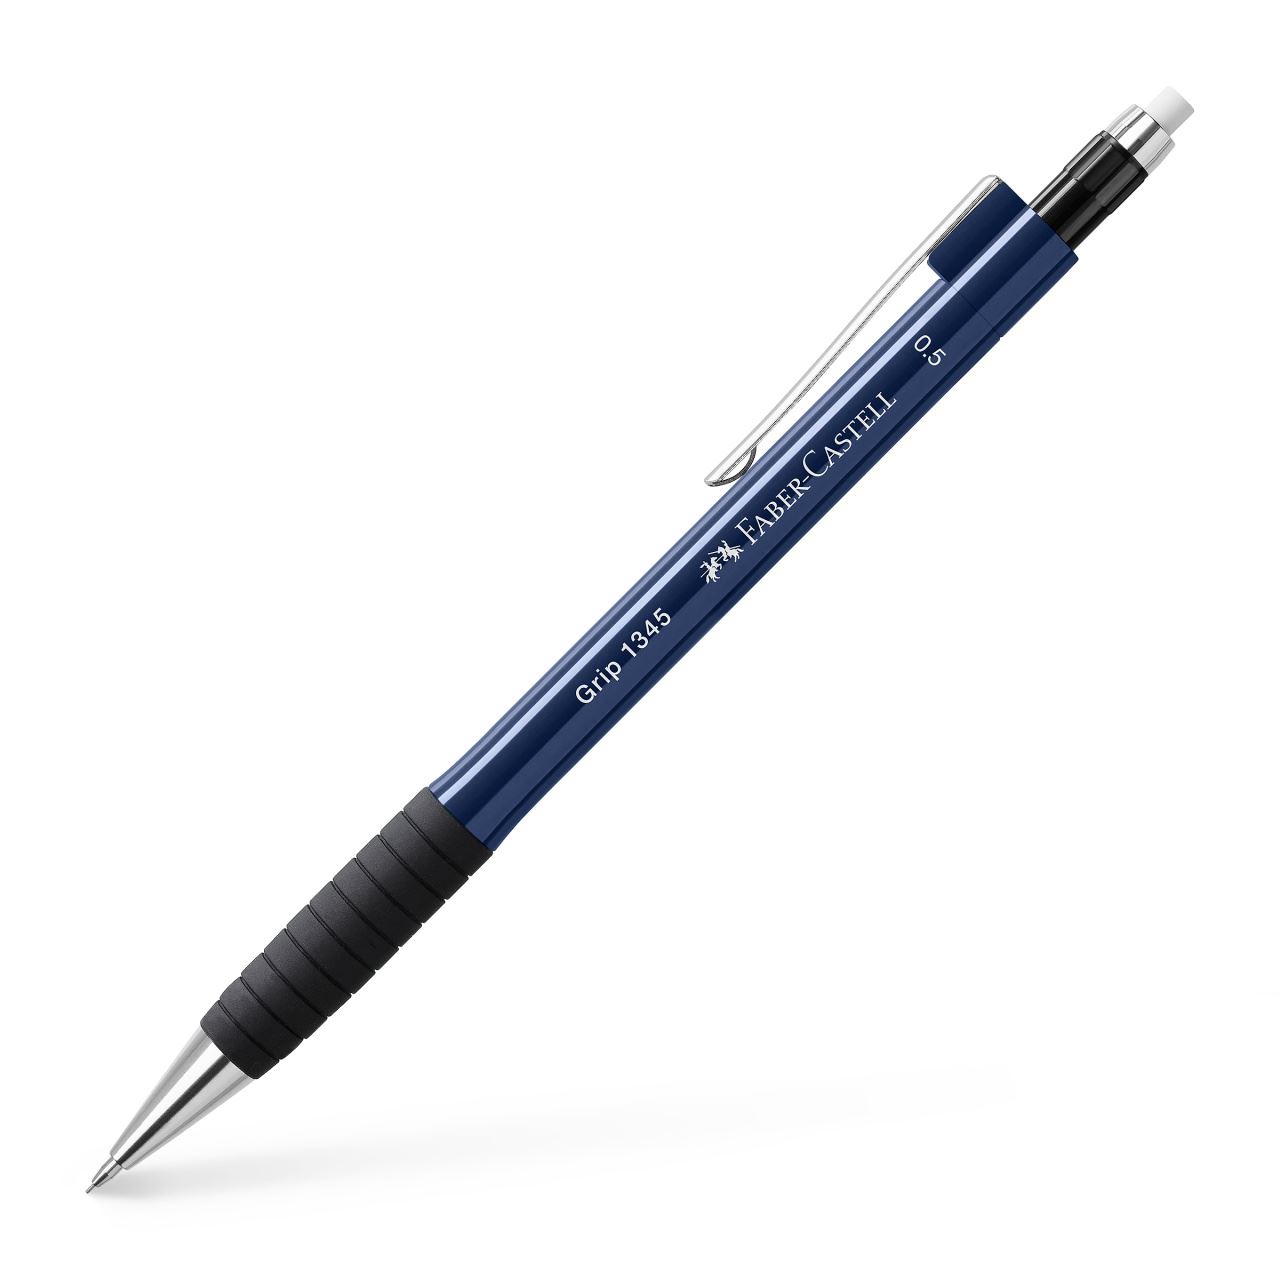 Faber-Castell - Grip 1345 mechanical pencil, 0.5 mm, blue metallic